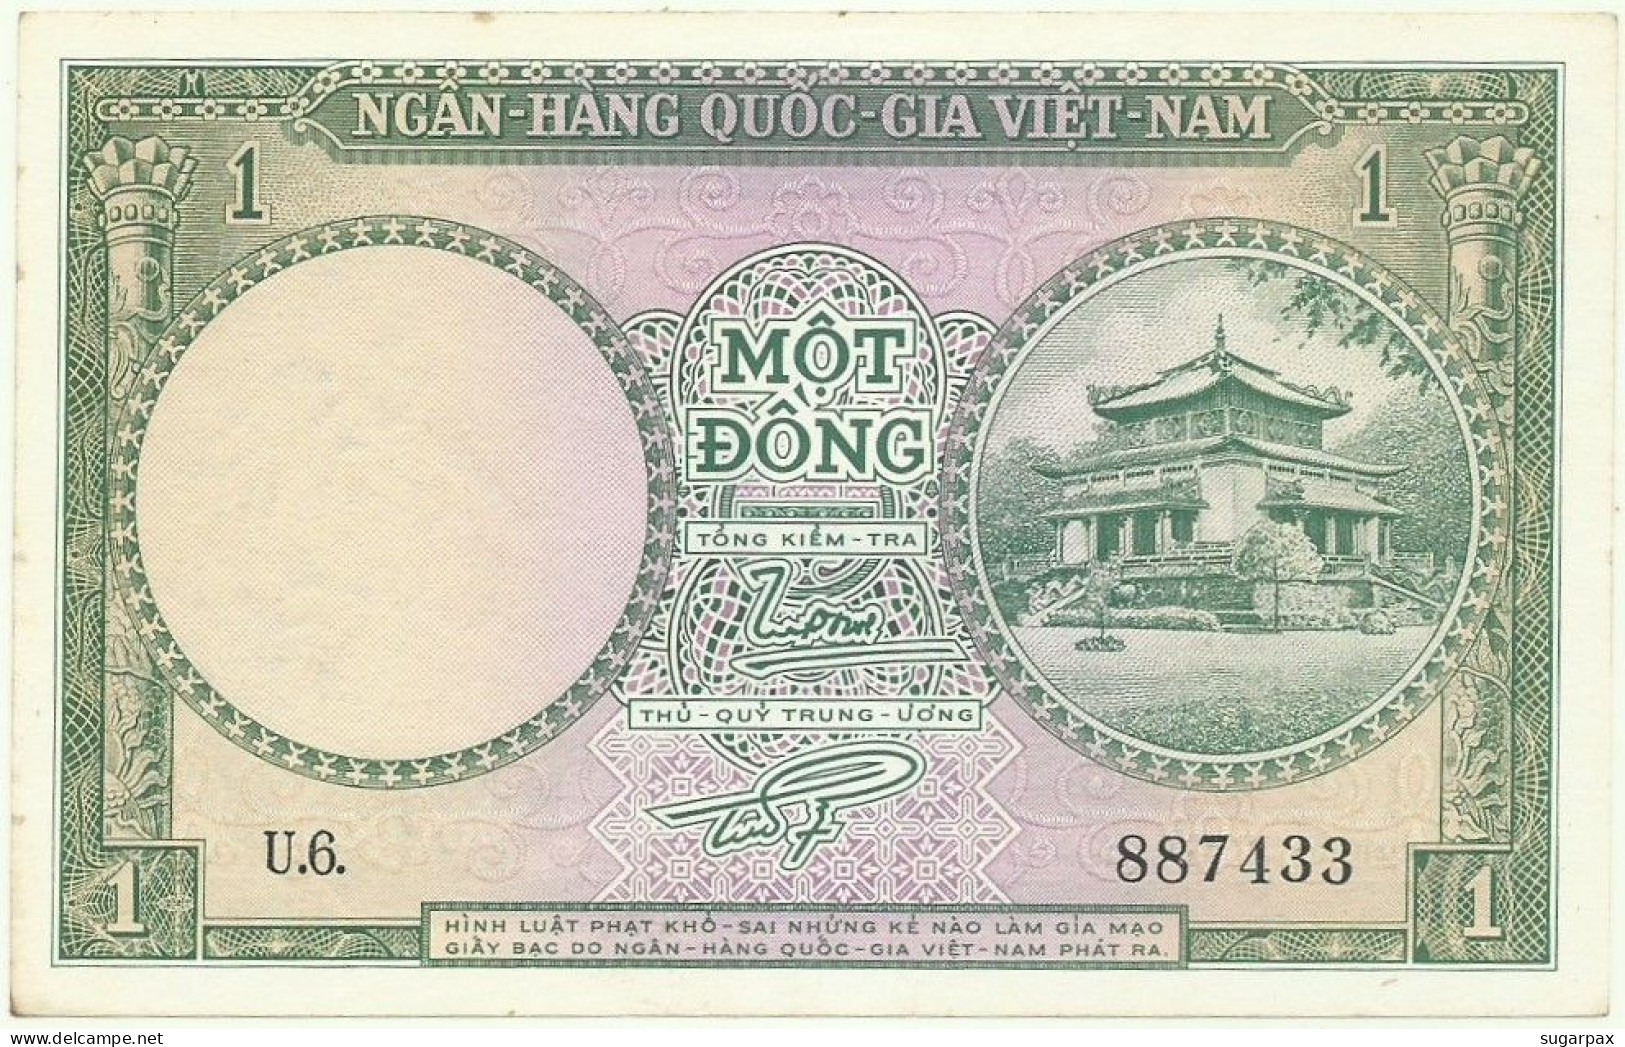 SOUTH VIET NAM - 1 DONG - ND ( 1956 ) - P 1 - AUnc. - SÉRIE U.6. - Temple - VIETNAM - Vietnam